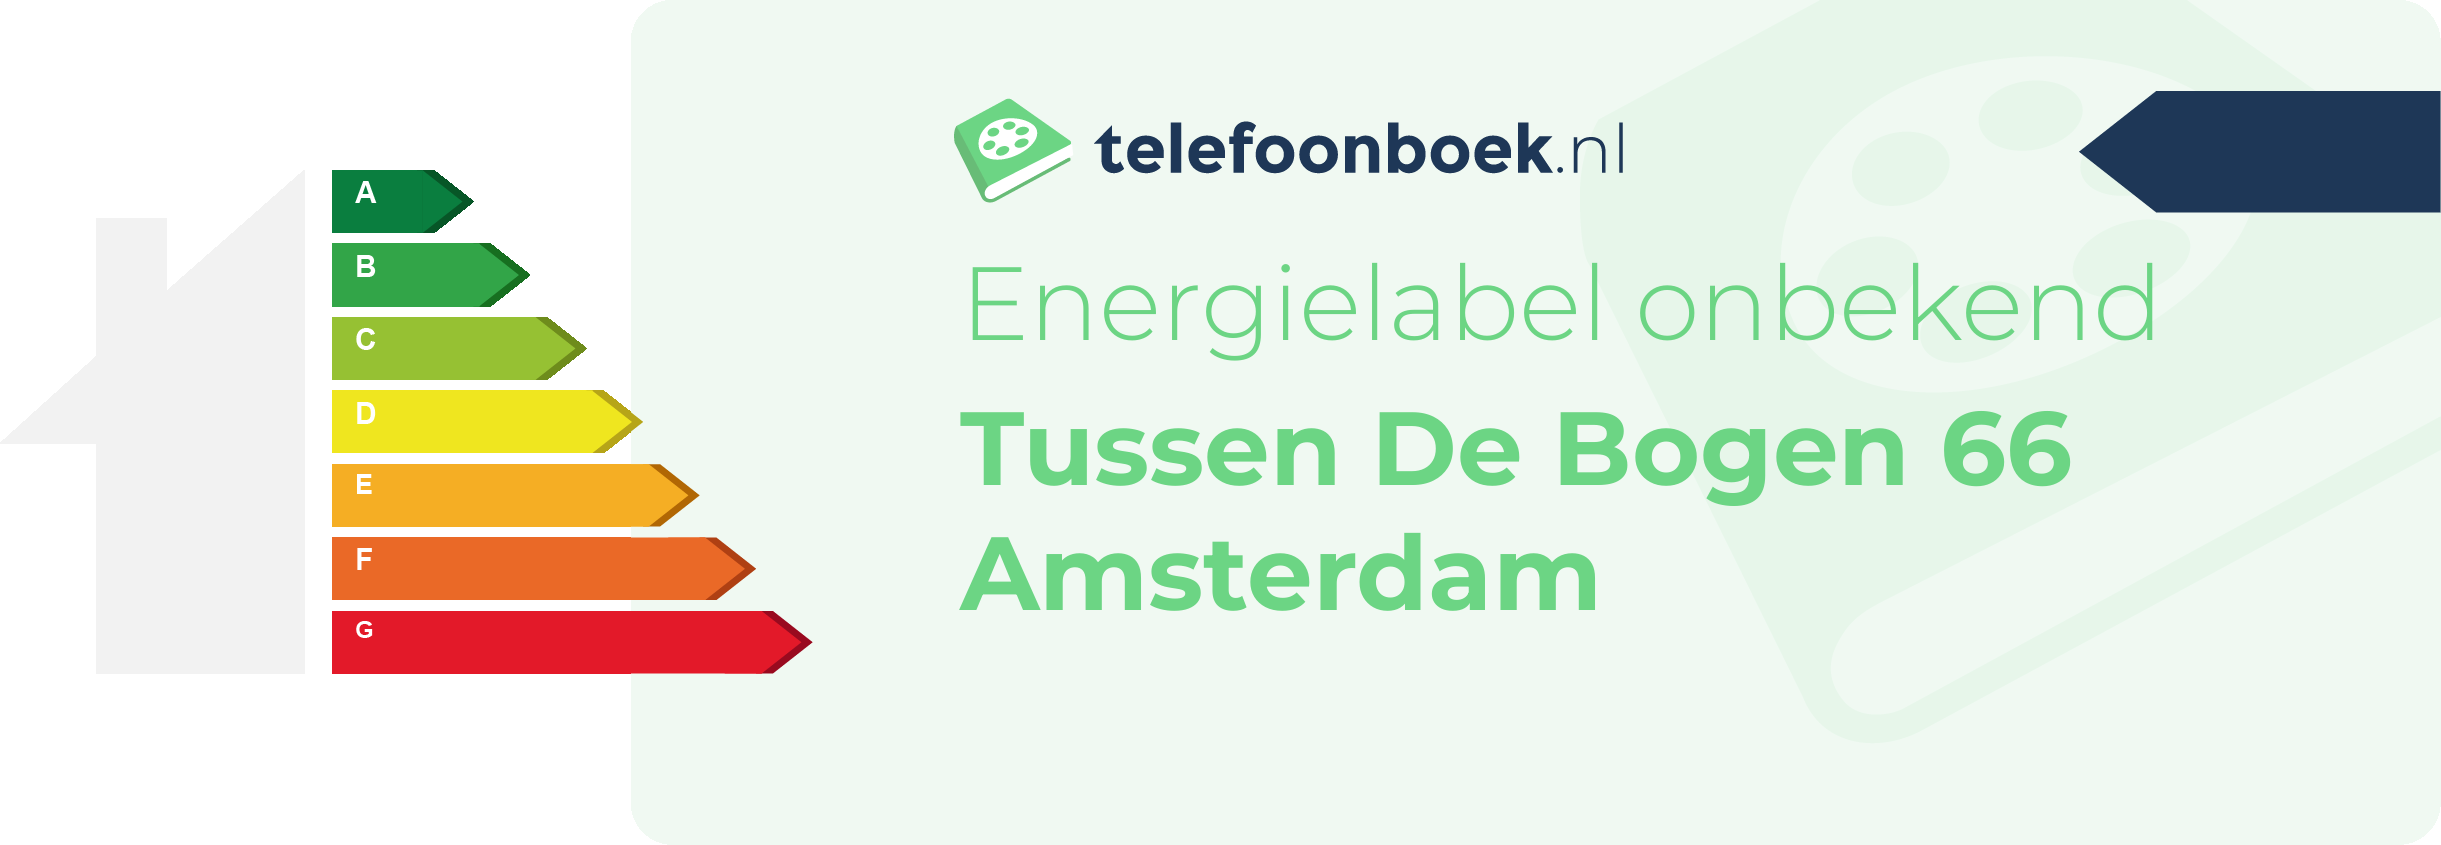 Energielabel Tussen De Bogen 66 Amsterdam